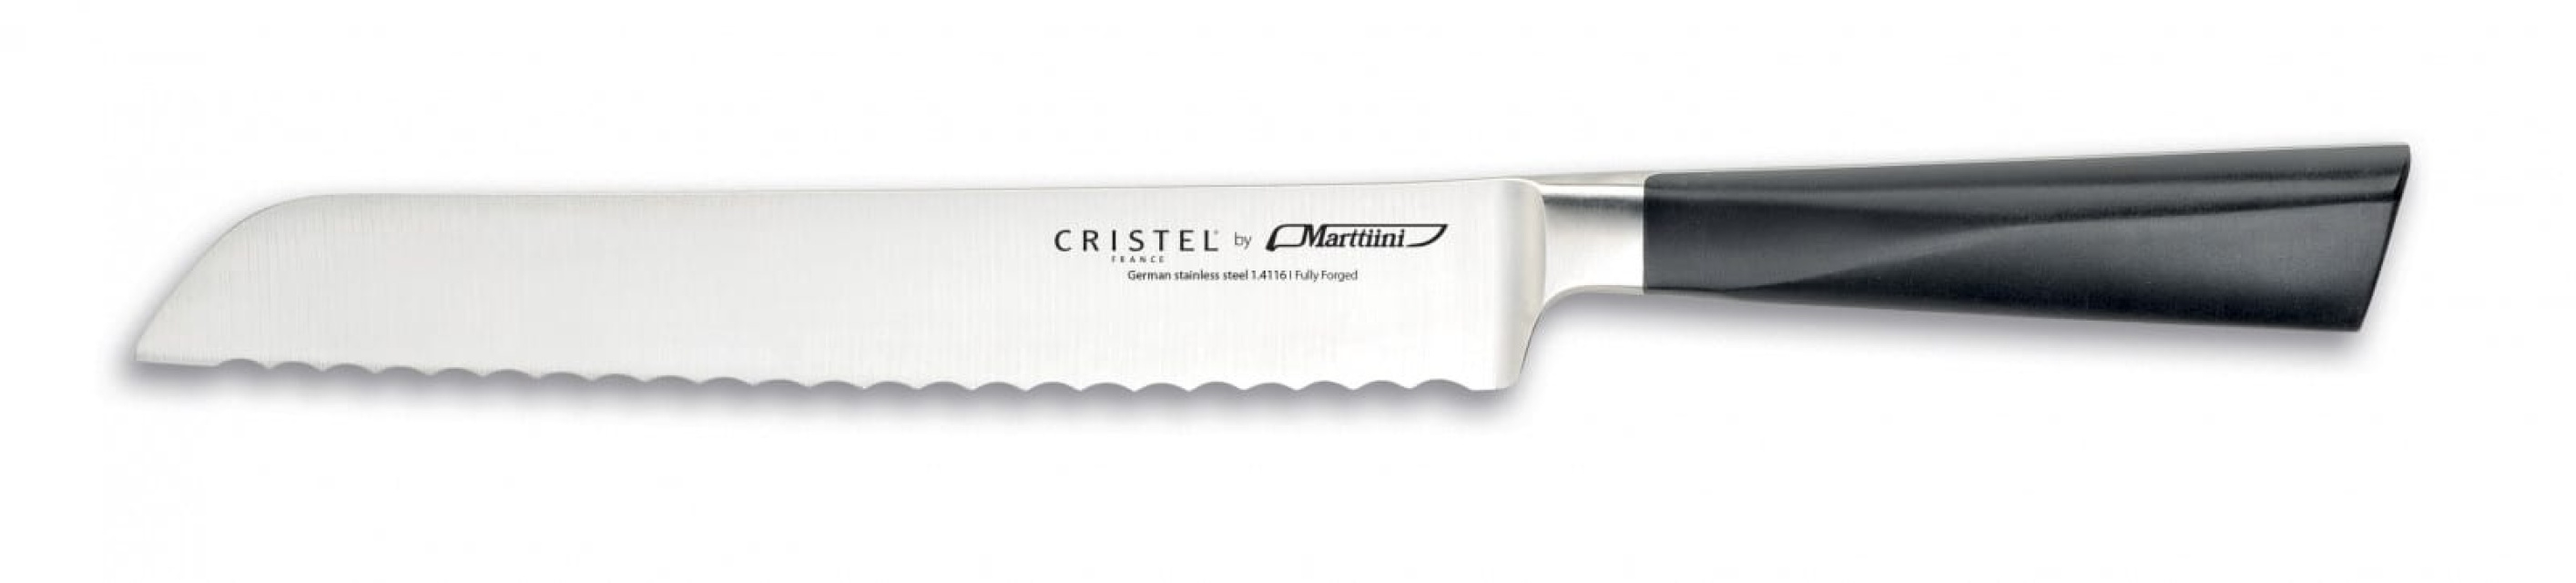 Nóż do chleba, 21 cm - Cristel